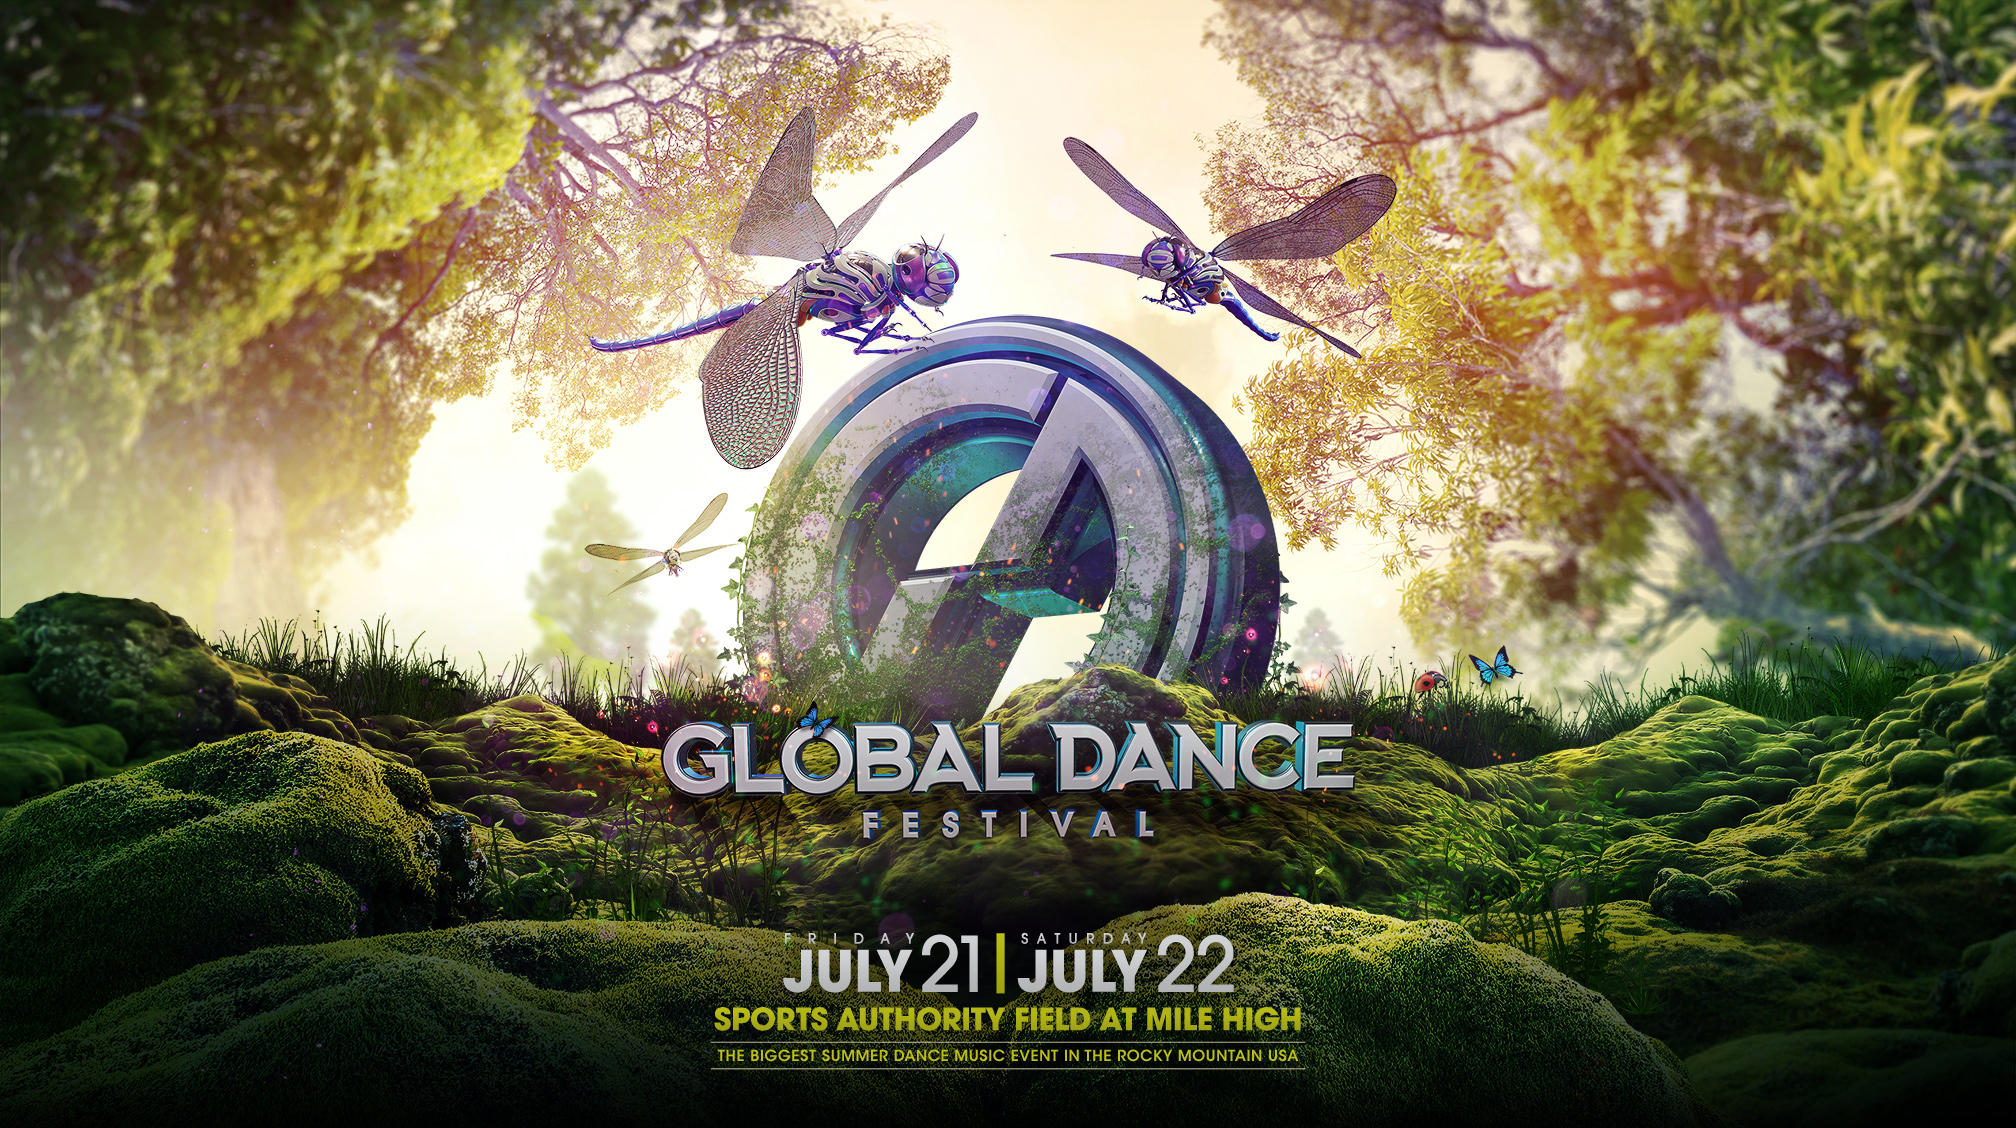 Global Dance Festival 2017